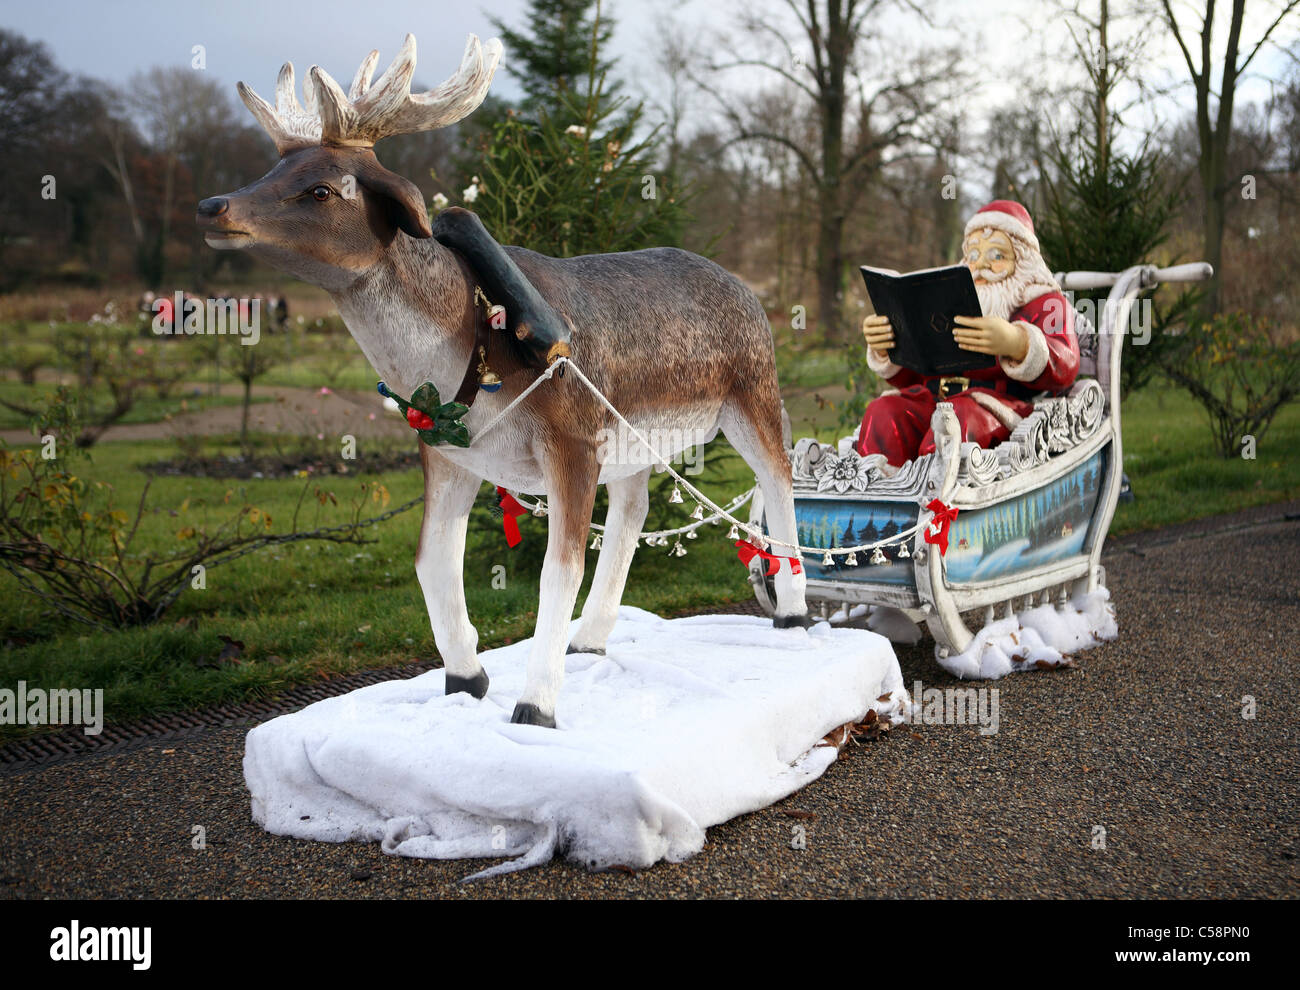 Escultura de Santa Claus en su trineo tirado por renos, Potsdam, Alemania Foto de stock